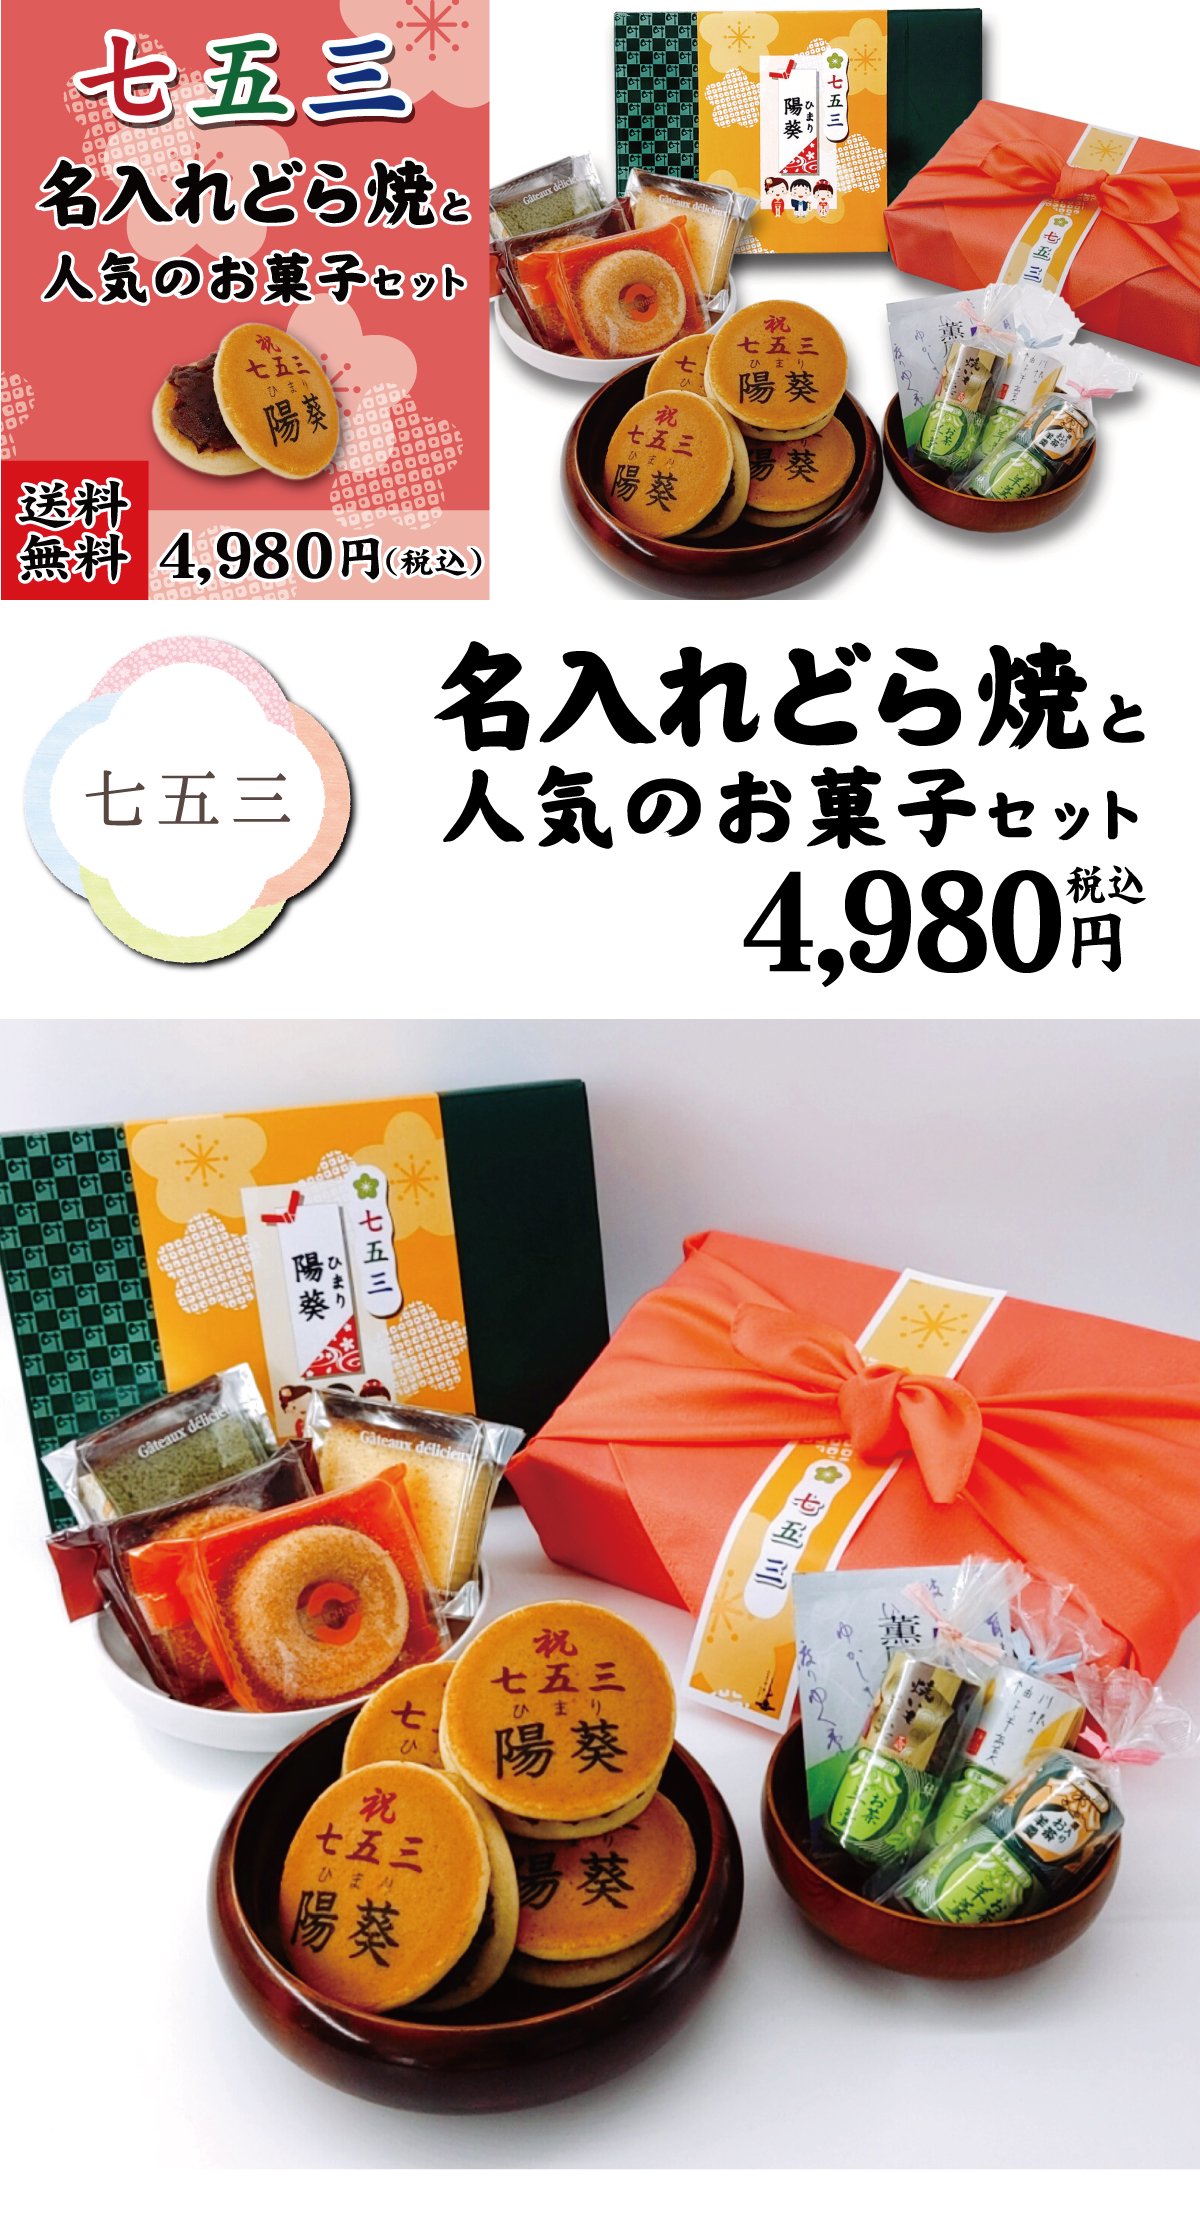 七五三4980円セット - 株式会社 三浦製菓